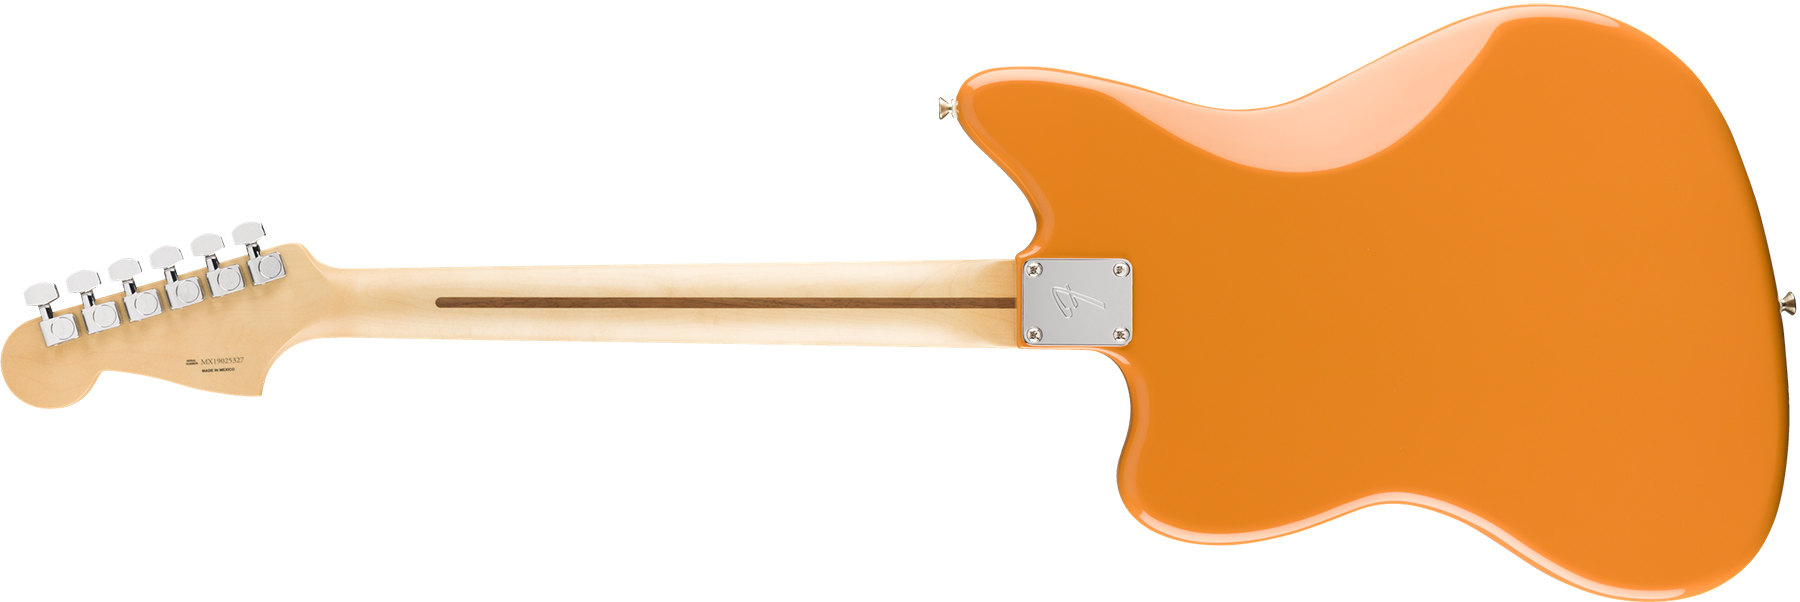 Fender Jazzmaster Player Mex Hh Pf - Capri Orange - Retro-rock elektrische gitaar - Variation 1